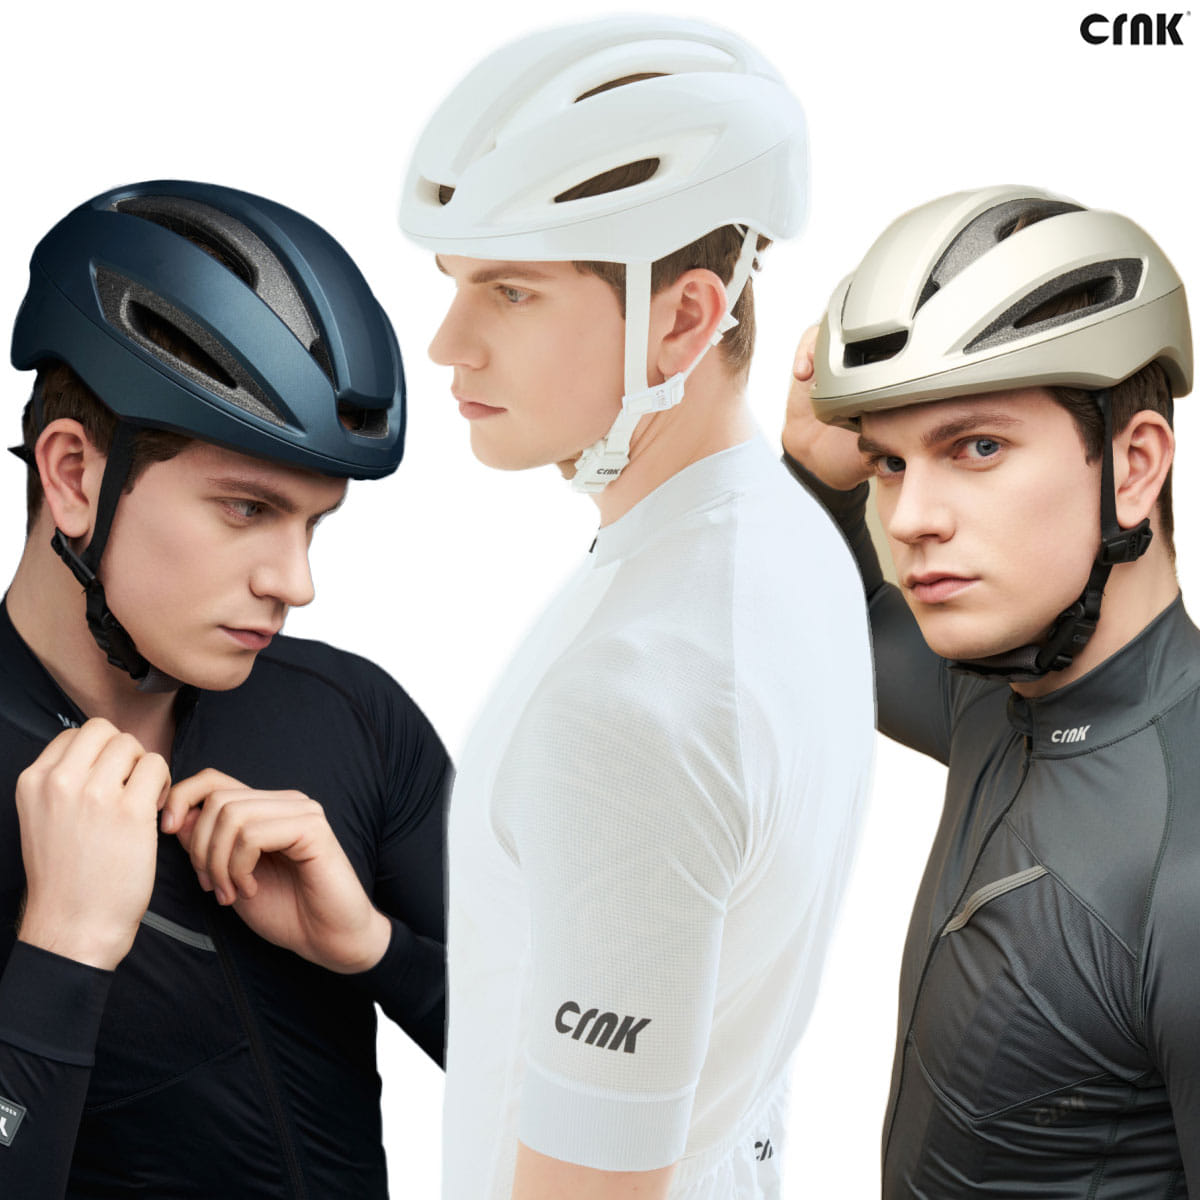 크랭크 버커 보드 인라인 싸이클 라이딩 자전거 MTB 로드 헬멧 헬맷 안전모